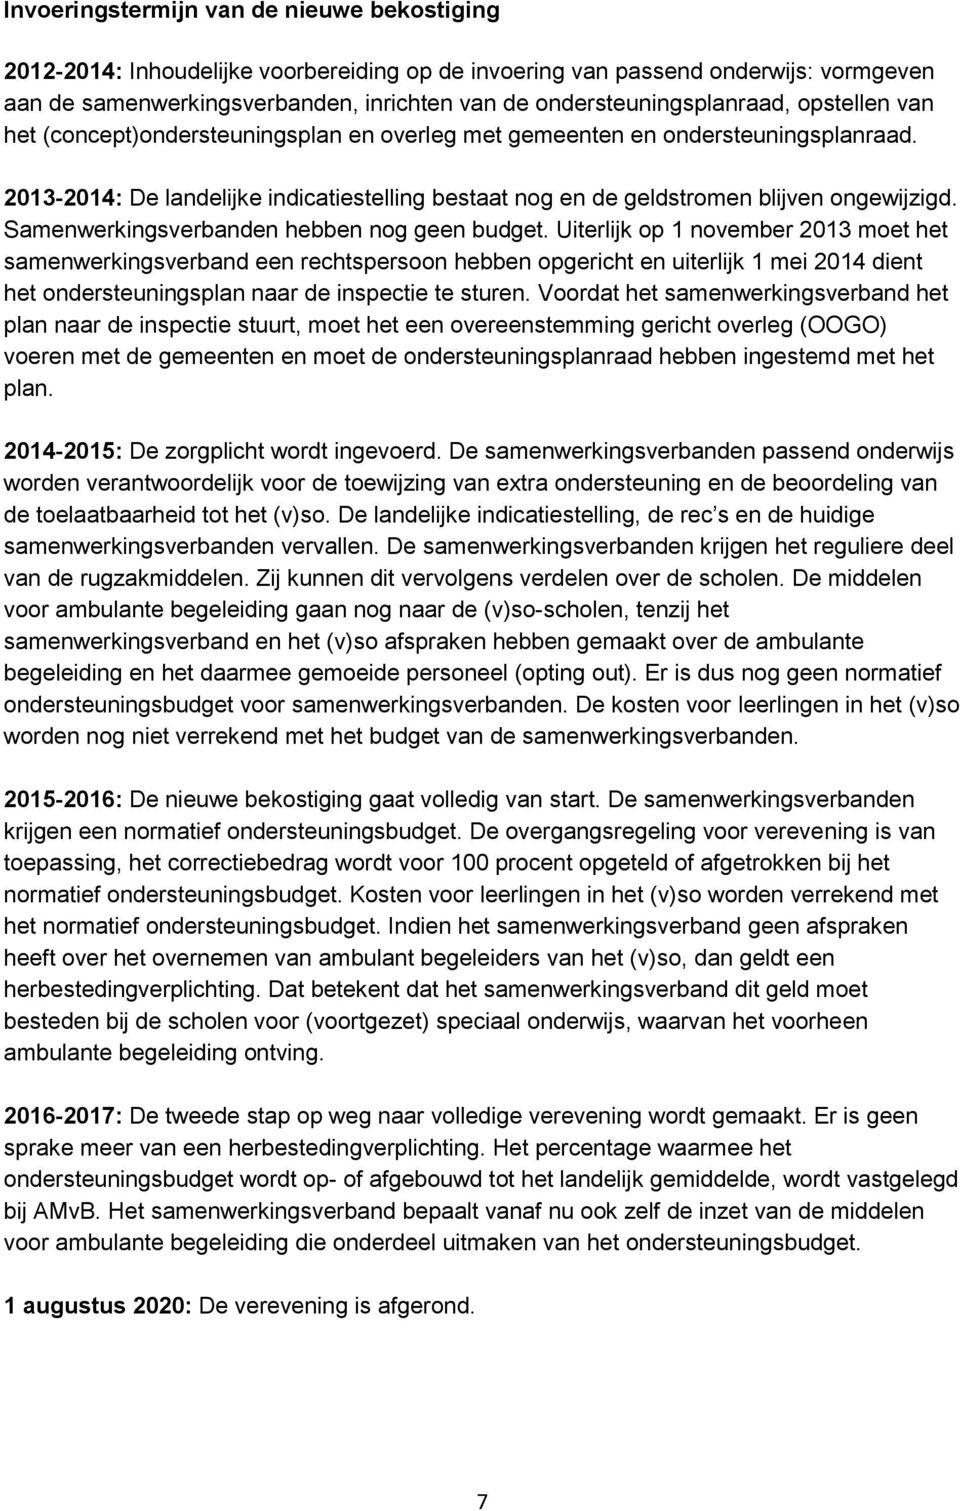 2013-2014: De landelijke indicatiestelling bestaat nog en de geldstromen blijven ongewijzigd. Samenwerkingsverbanden hebben nog geen budget.